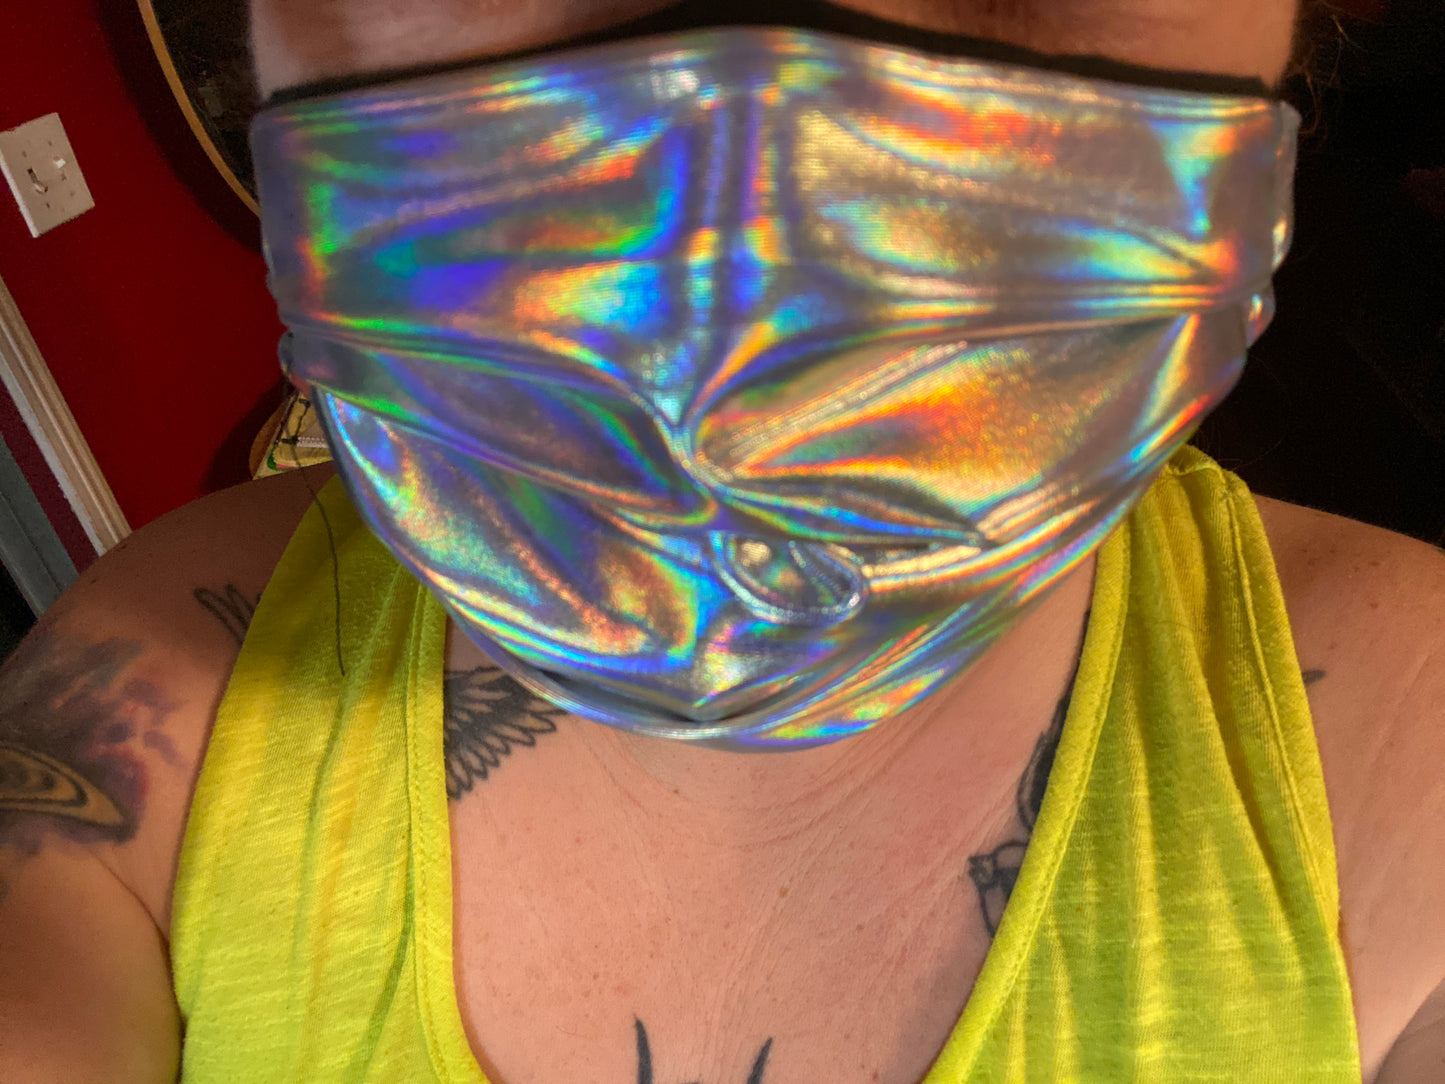 Hologram face mask